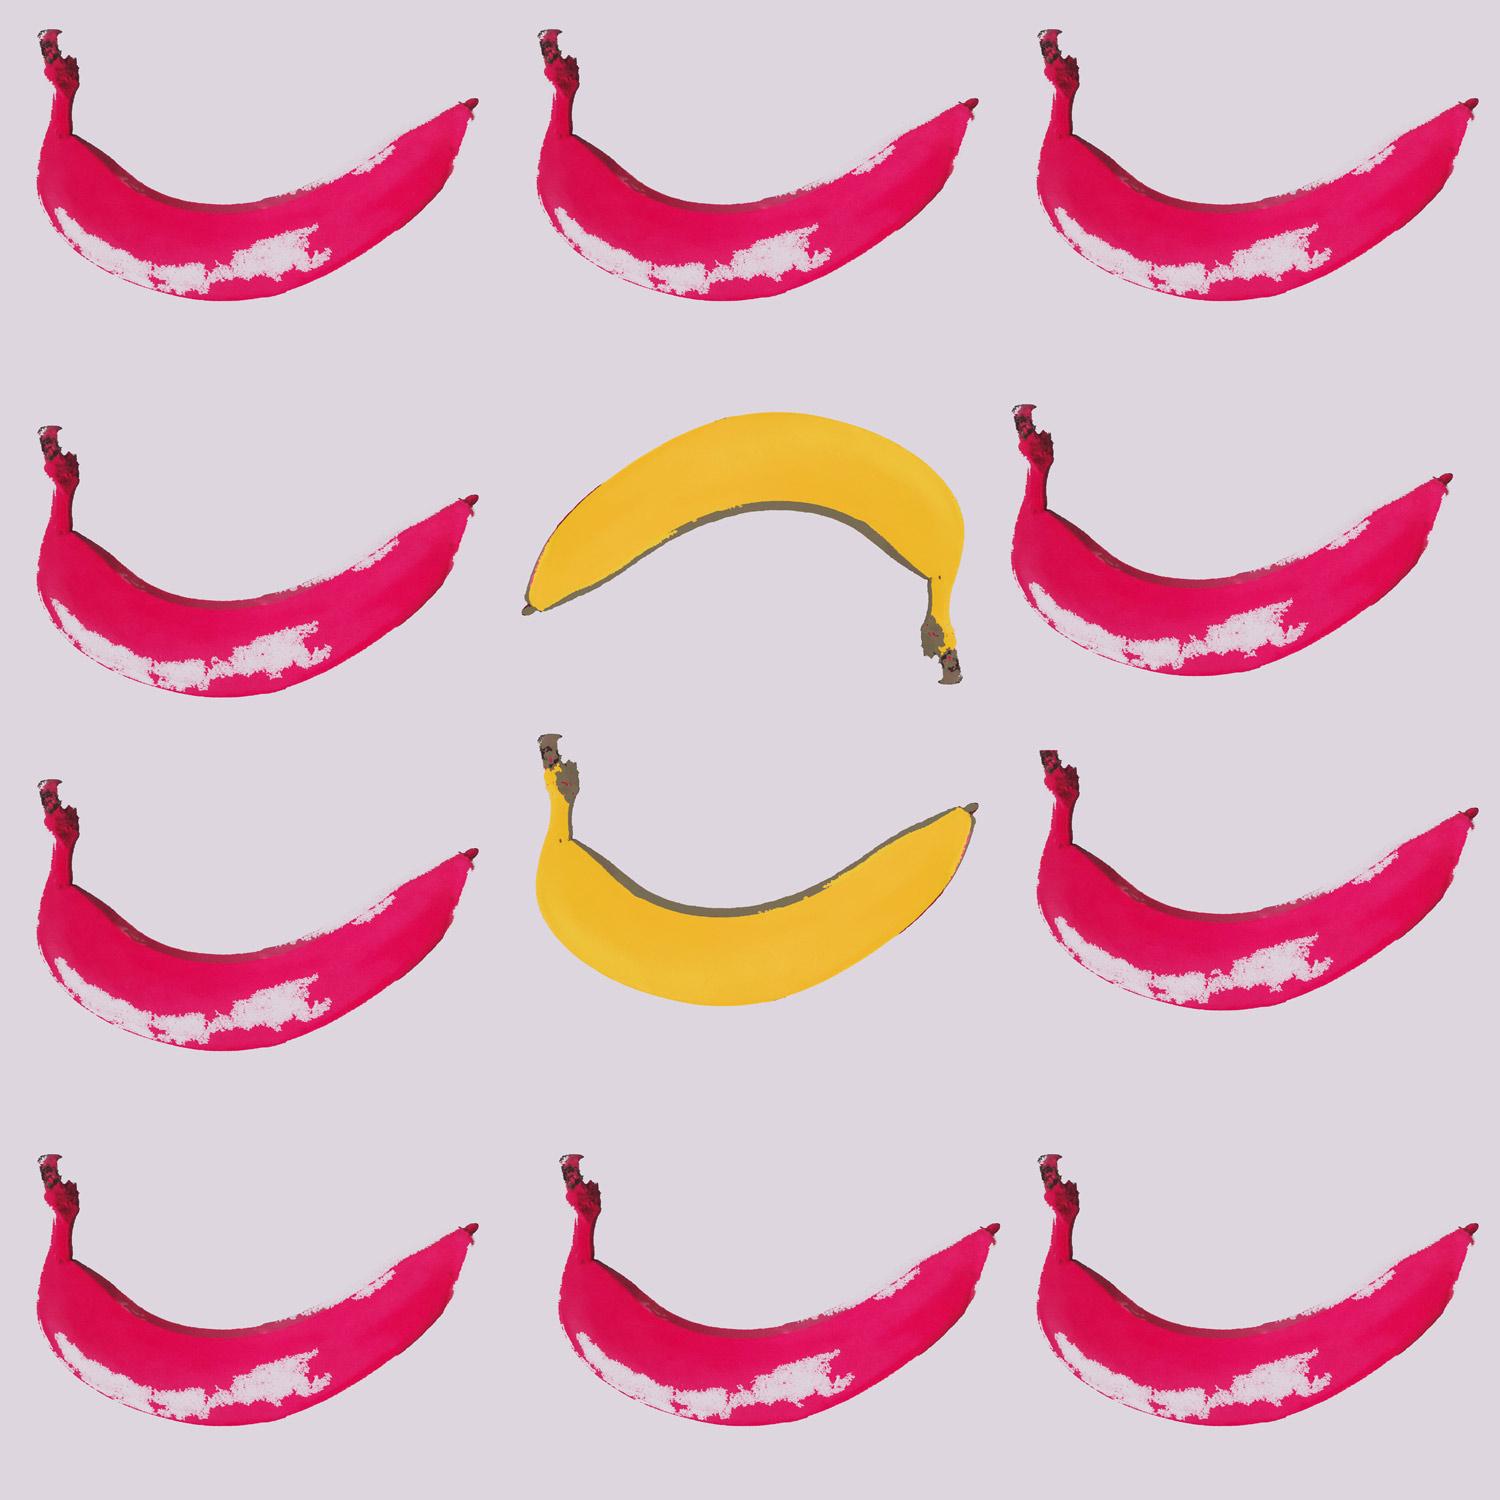 10 Collage einer Banane, inspiriert von Andy Warhols Motiv im Pop-Art-Stil.

C-Print auf Aludi-Bond hinter Acrylglas (Museumsqualität)

Jochens Arbeiten werden bei renommierten Fotowettbewerben wie Trierenberg Circuit, Monochrome Awards, Fotoforum